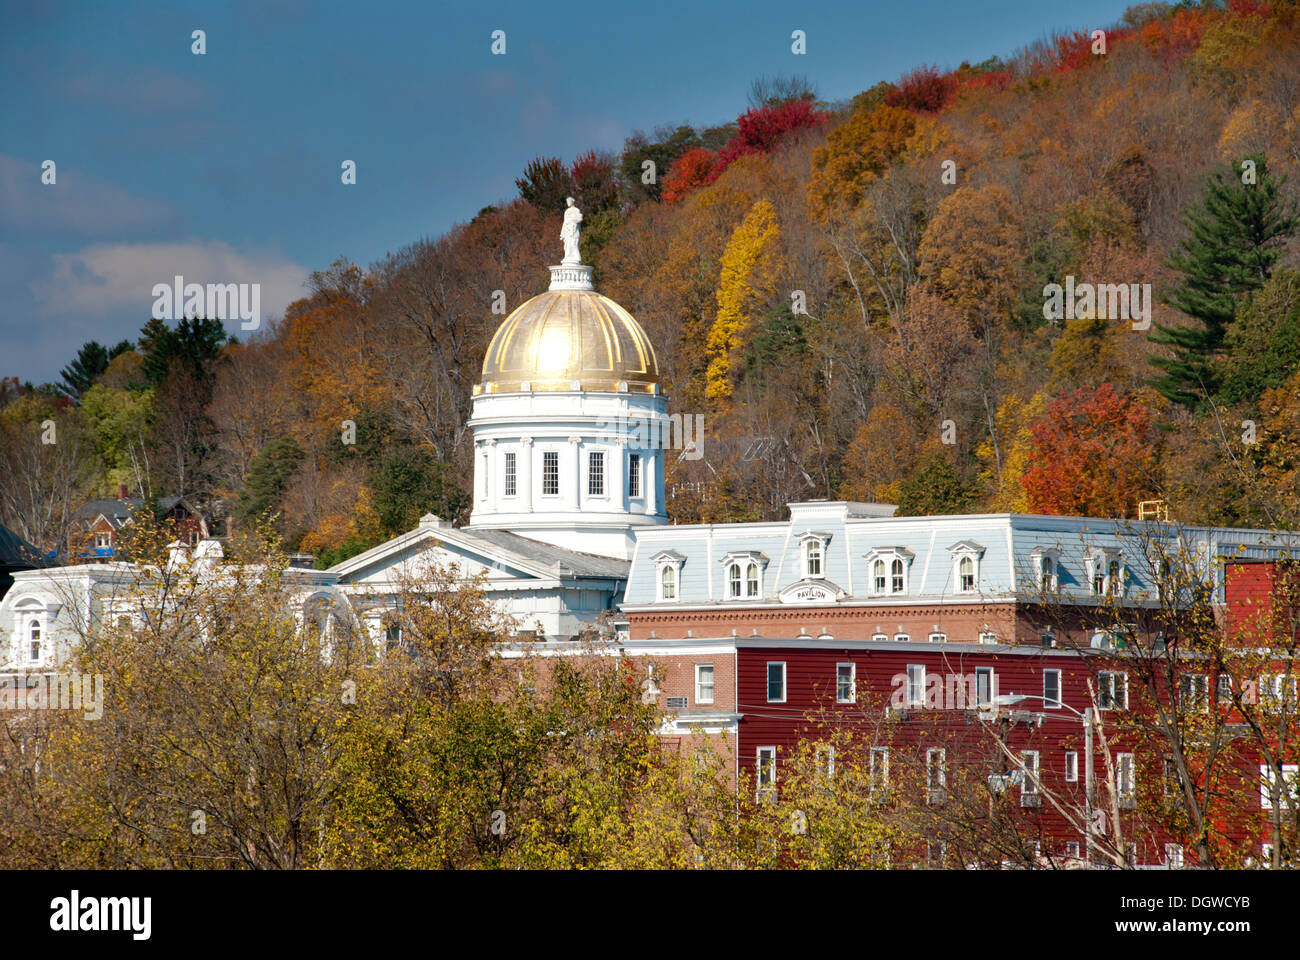 State Capitol building avec un dôme doré, Montpelier, Vermont, New England, USA, Amérique du Nord, Amérique Banque D'Images